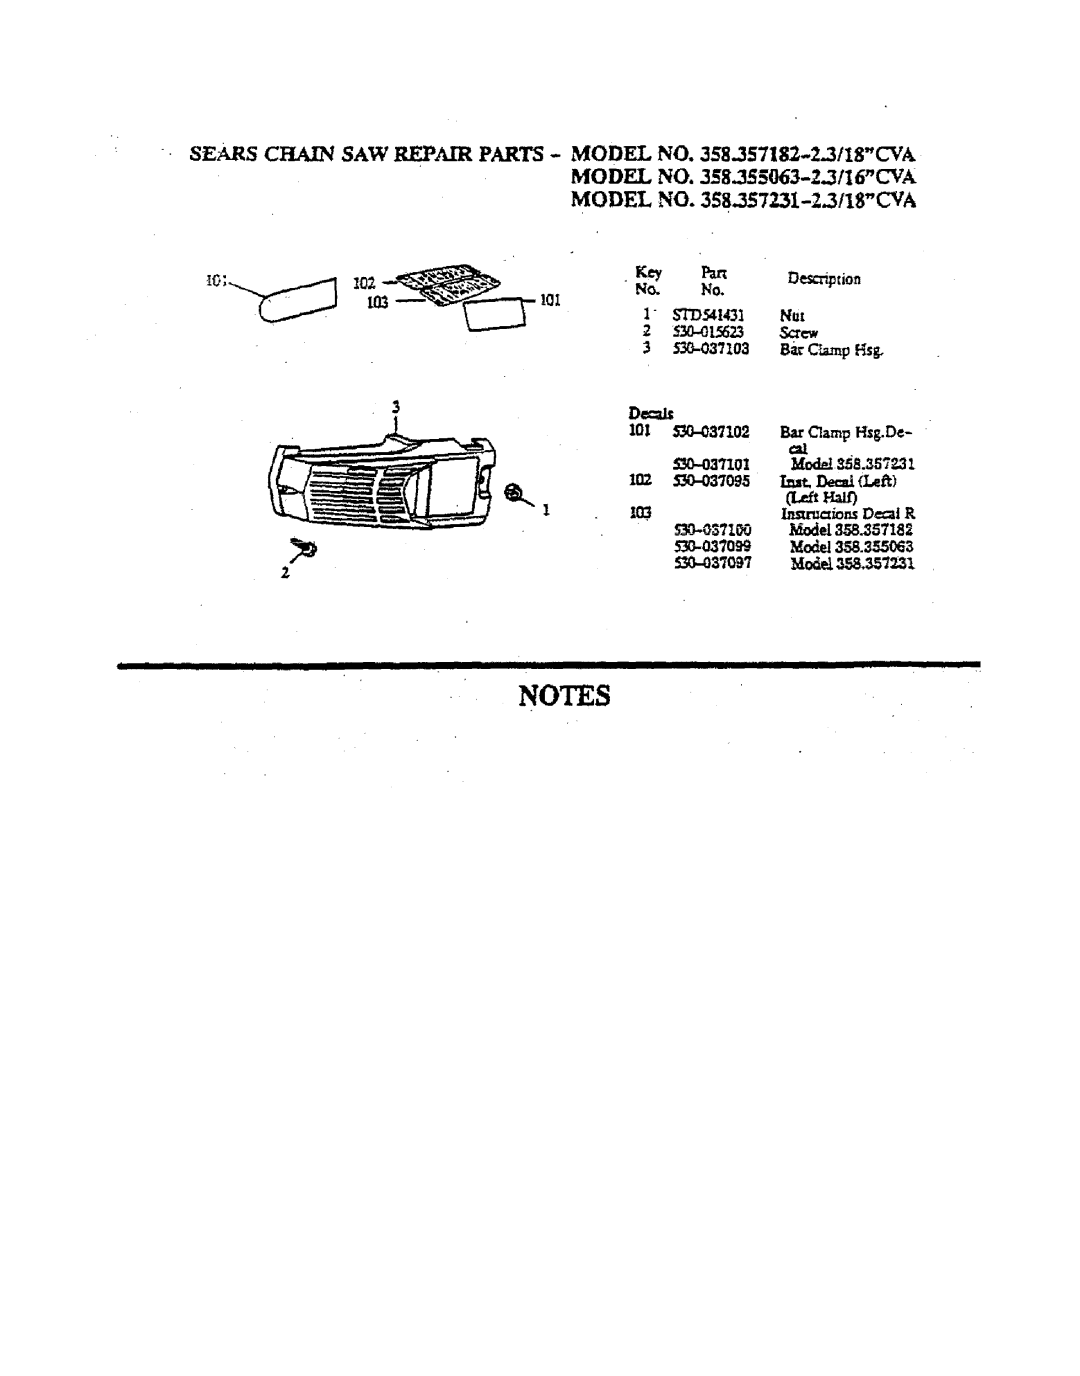 Sears manual MODEL NO. 358.355063-Z.3II6CVA, MODEL NO. 358.357231-2.3118CVA, Iiiiiiiii, IllllllllIHI, IllllIll ¸ Ill 